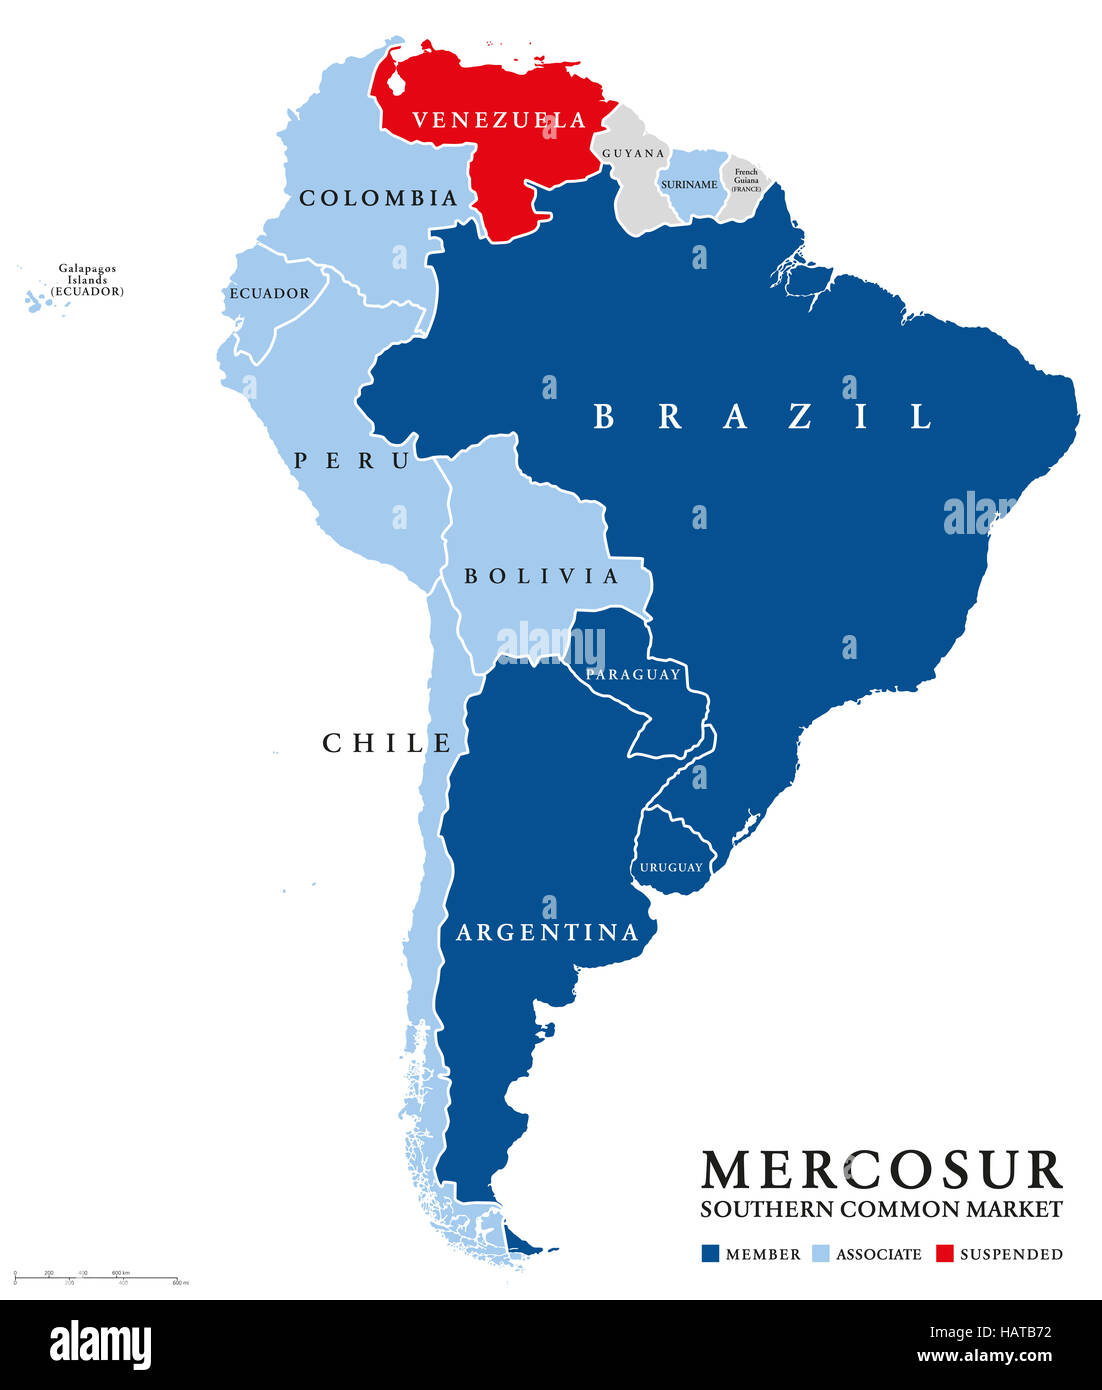 MERCOSUR-Länder Karte mit abgehängten Mitglied Venezuela. Gemeinsamen Markt des Südens, auch Mercosul. Freihandel Bloc. Stockfoto